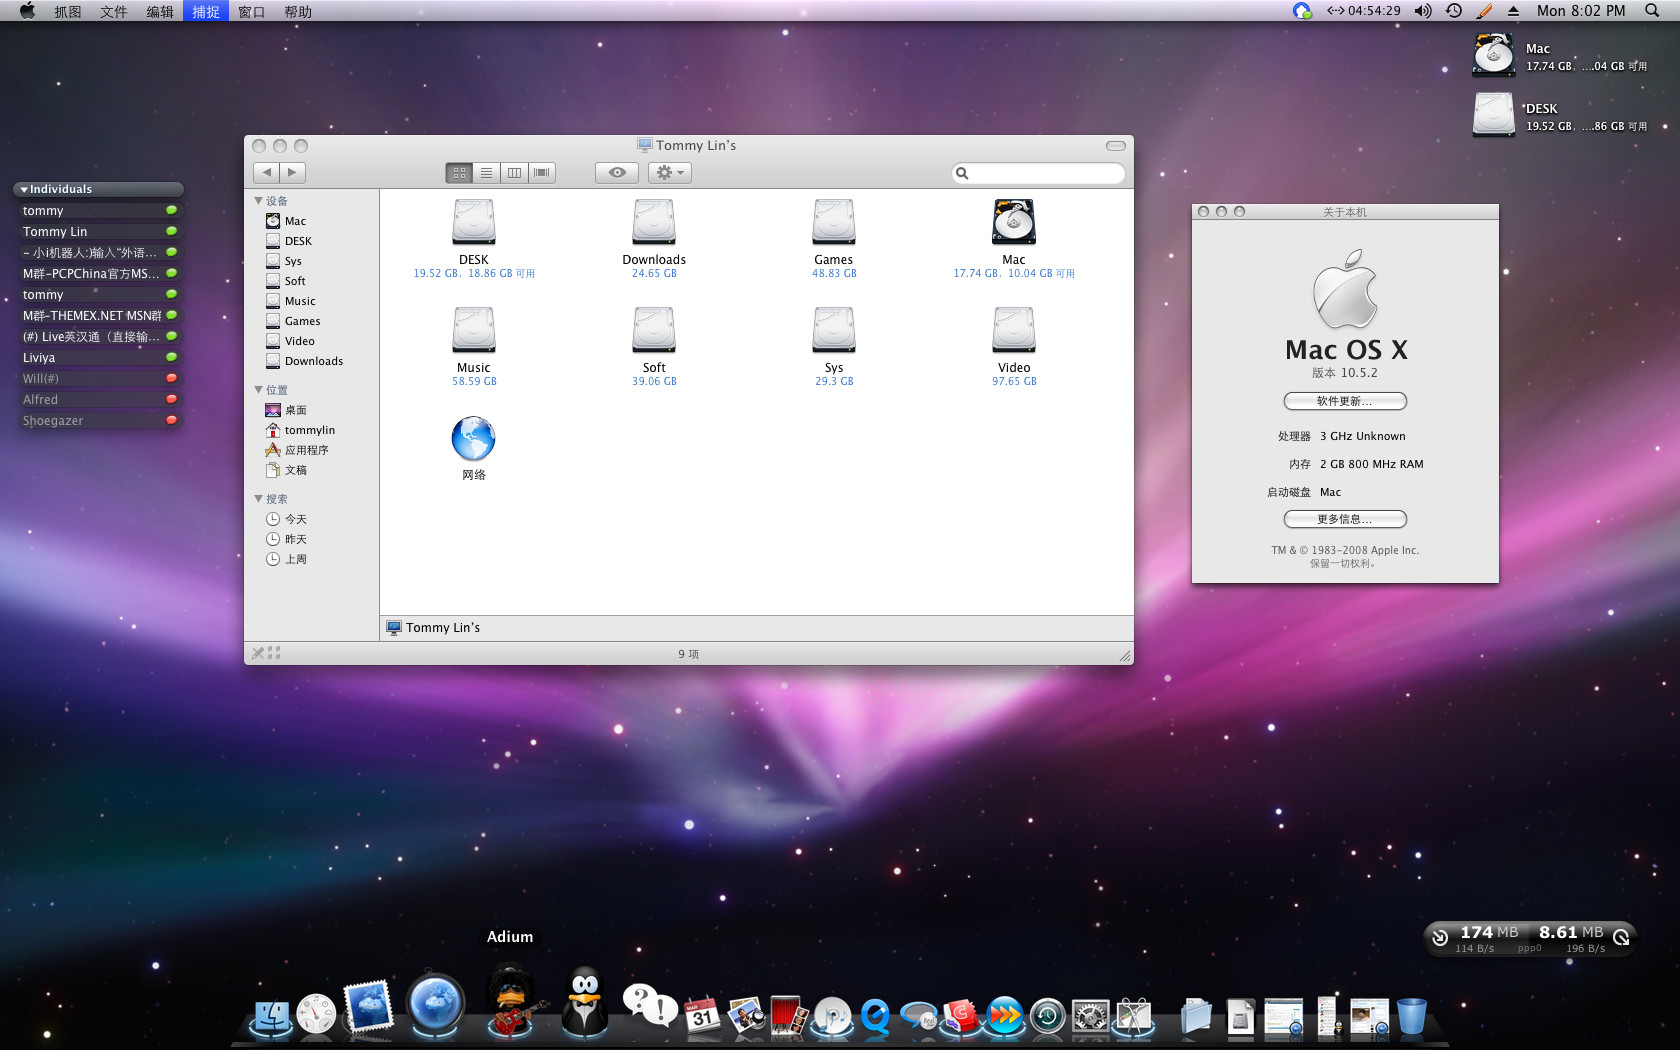 Safari For Mac Os X 10.6 8